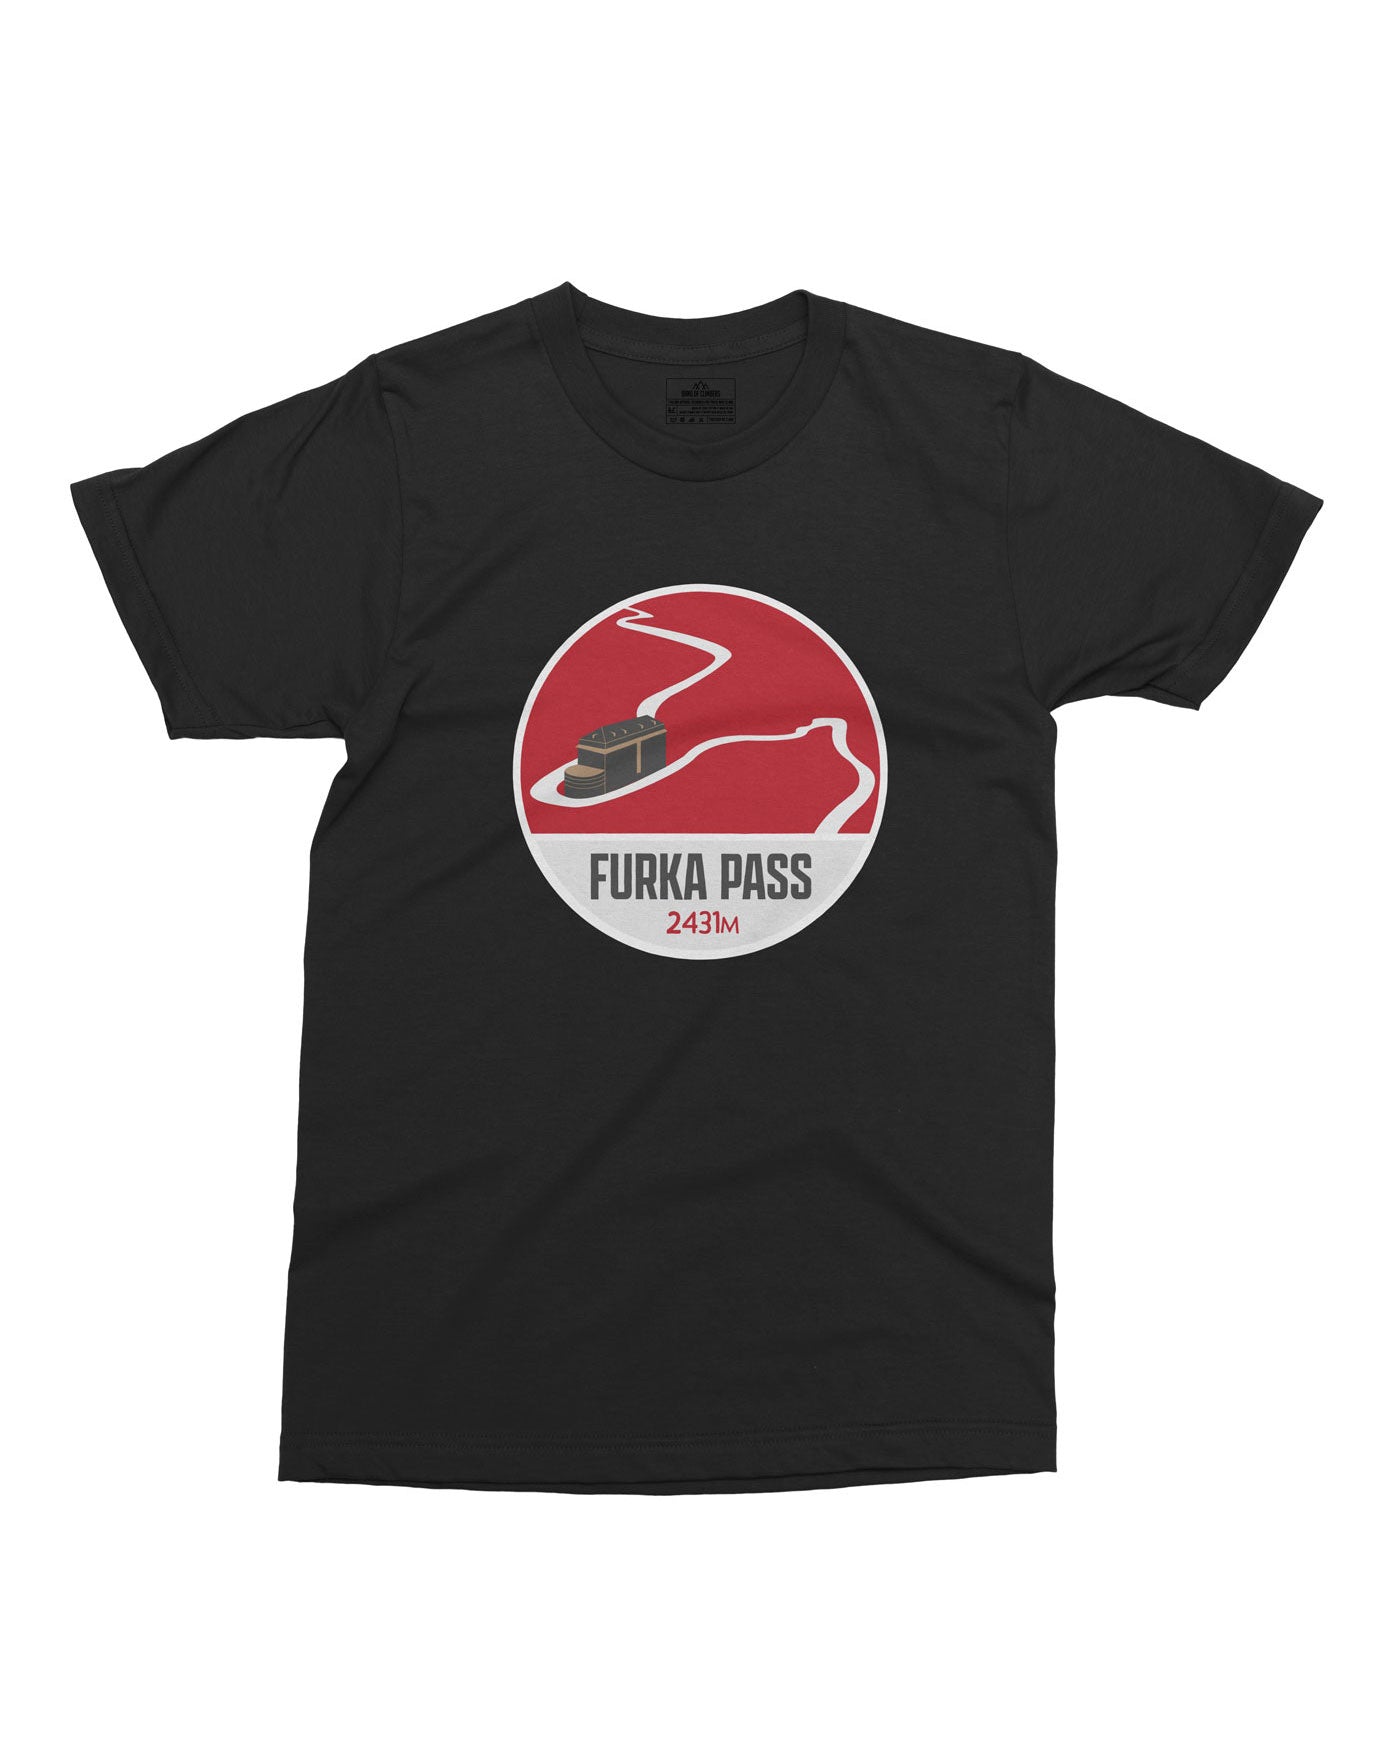 Furka Pass T-shirt - Black